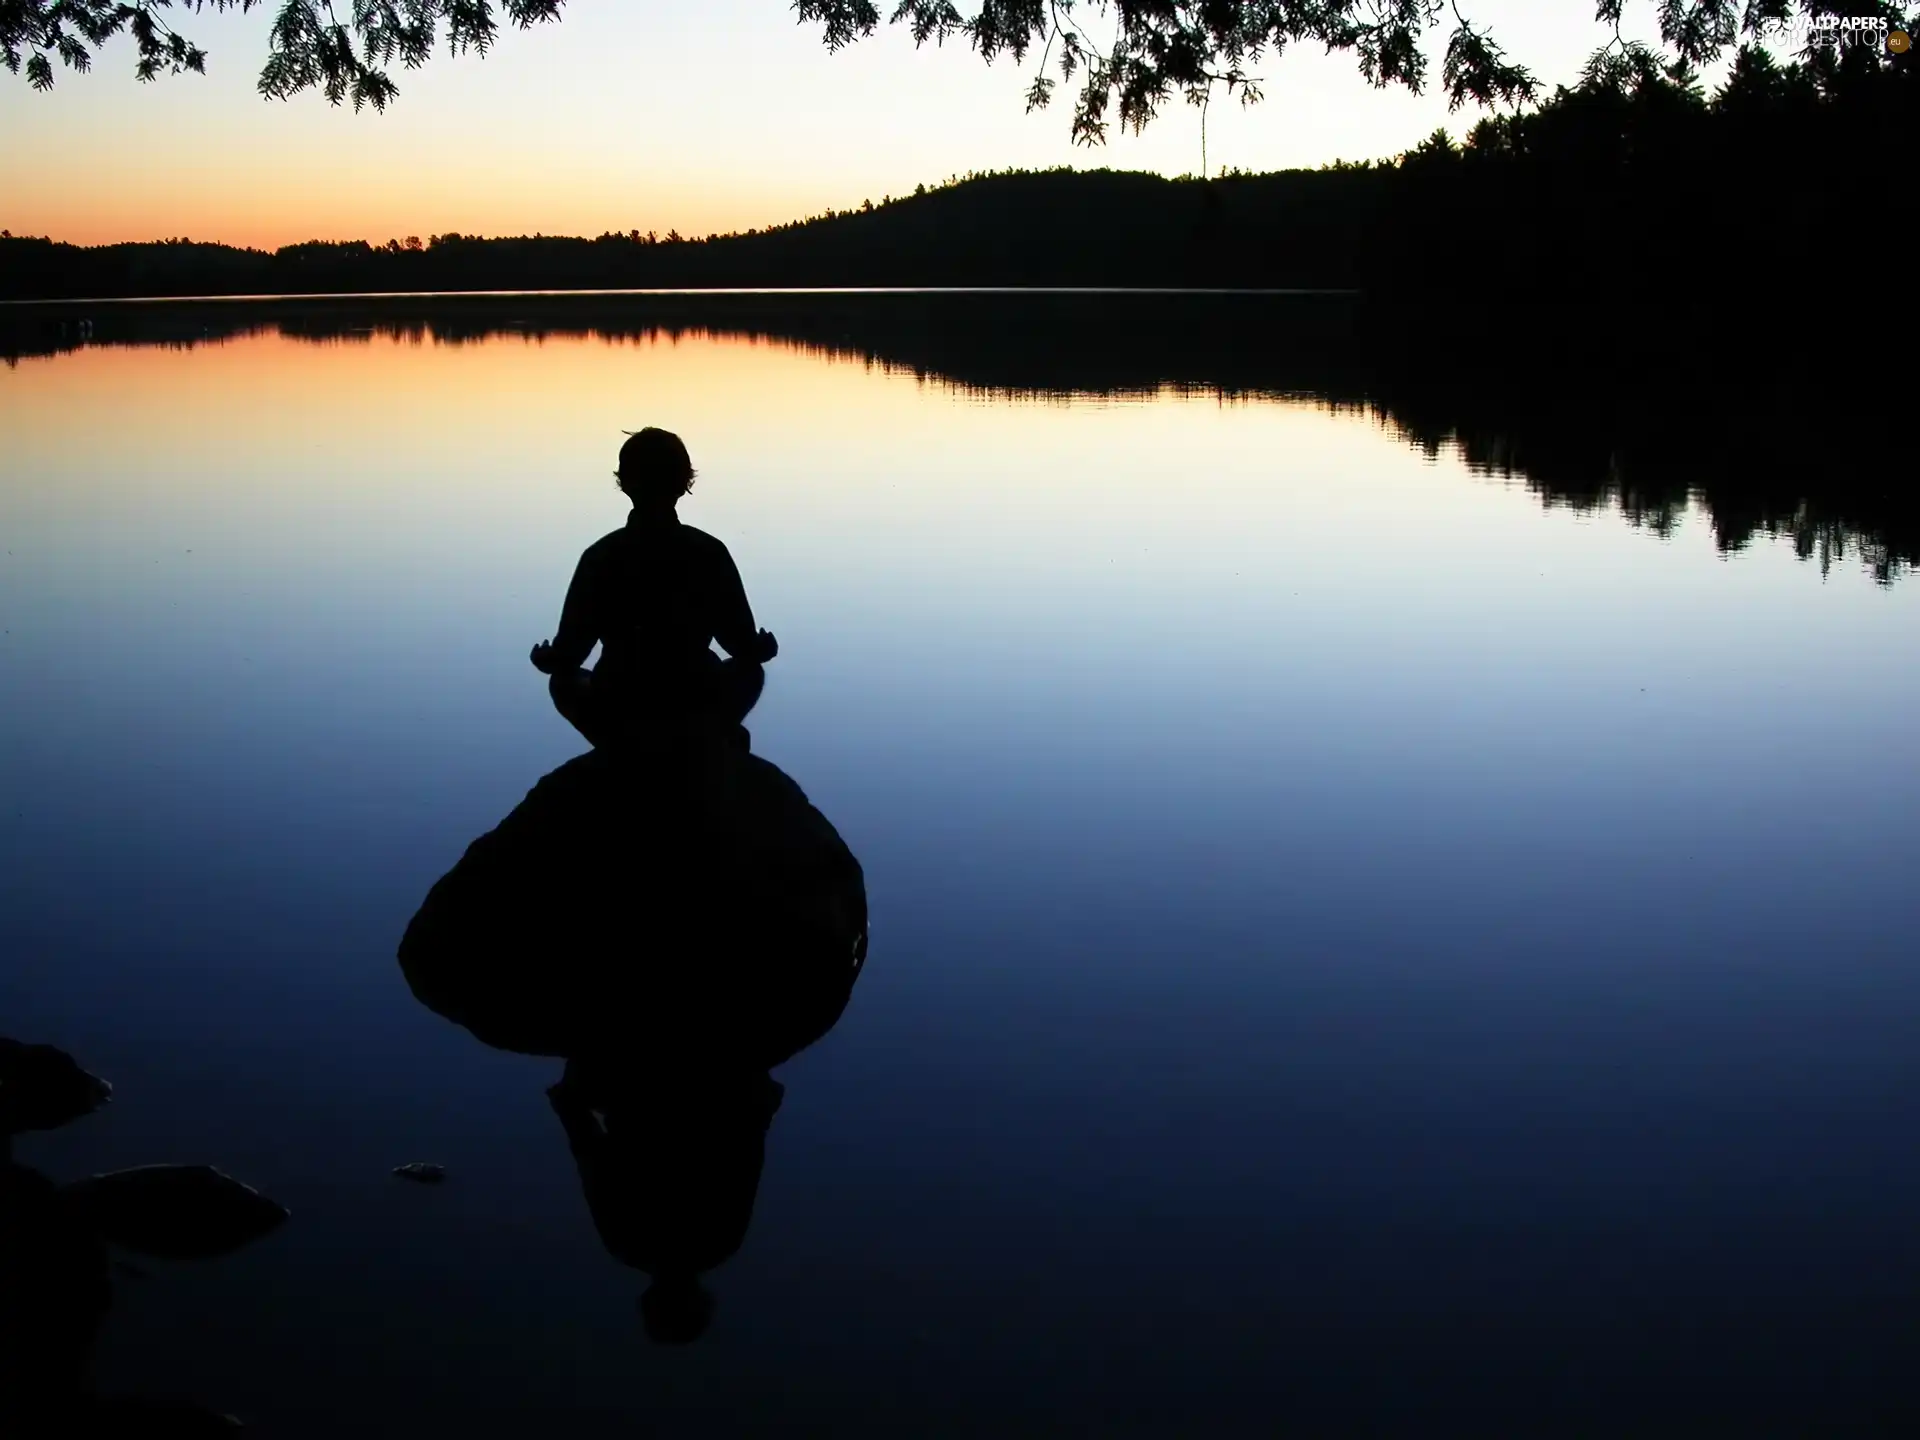 Great Sunsets, Human, reflection, lake